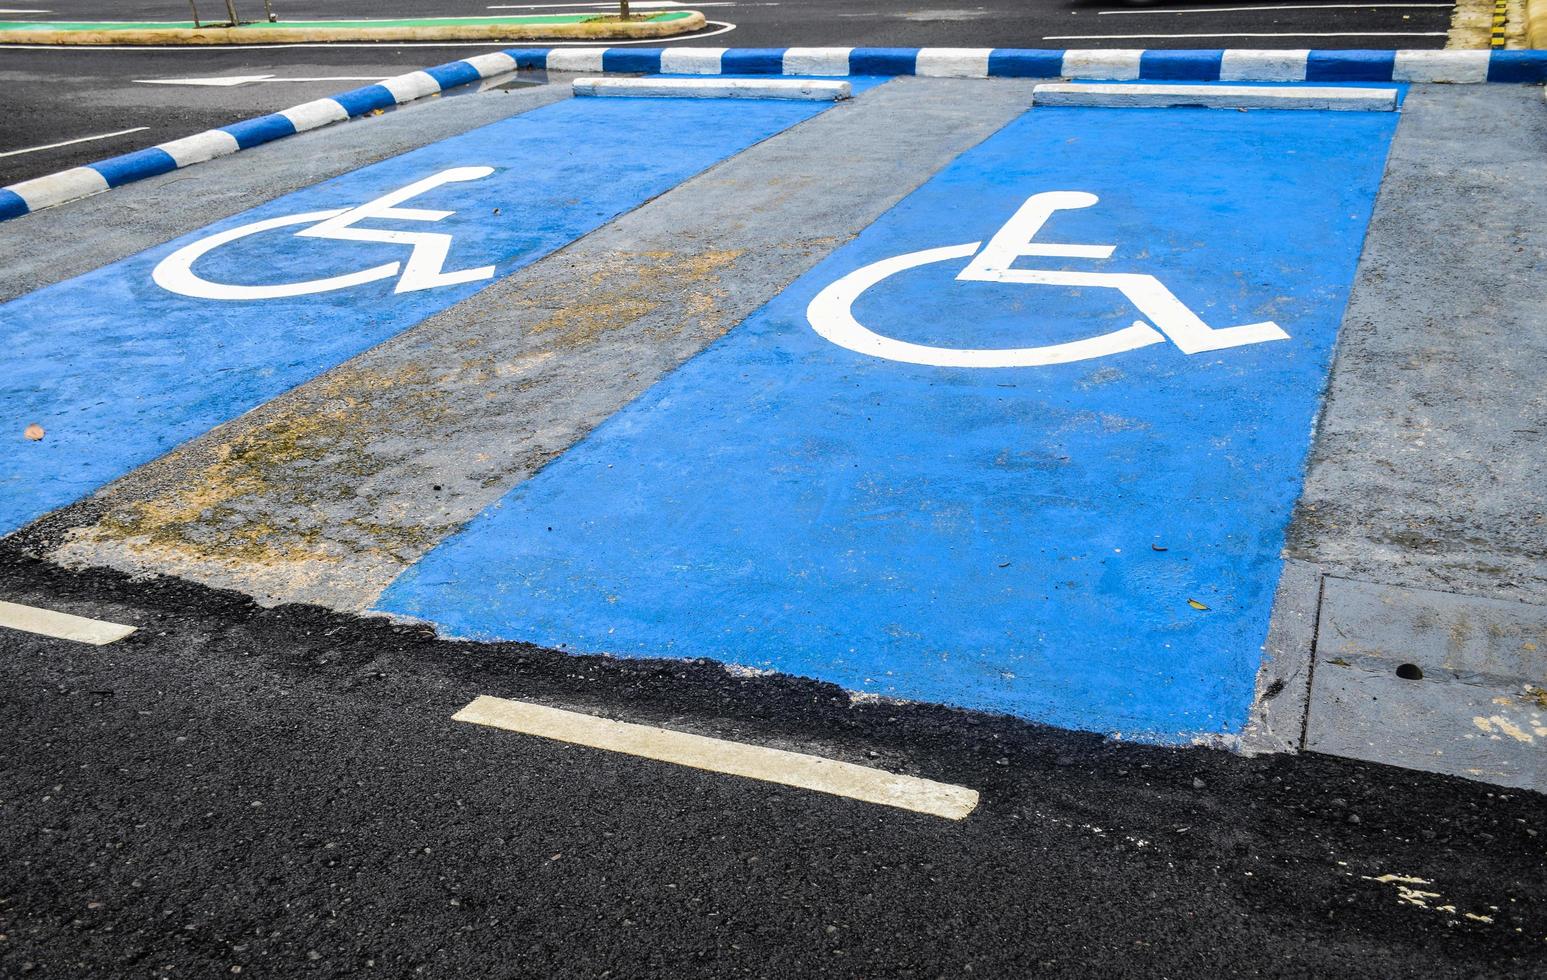 panneau de stationnement pour permis de stationnement pour personnes handicapées, fauteuil roulant, panneau de stationnement pour personnes handicapées photo